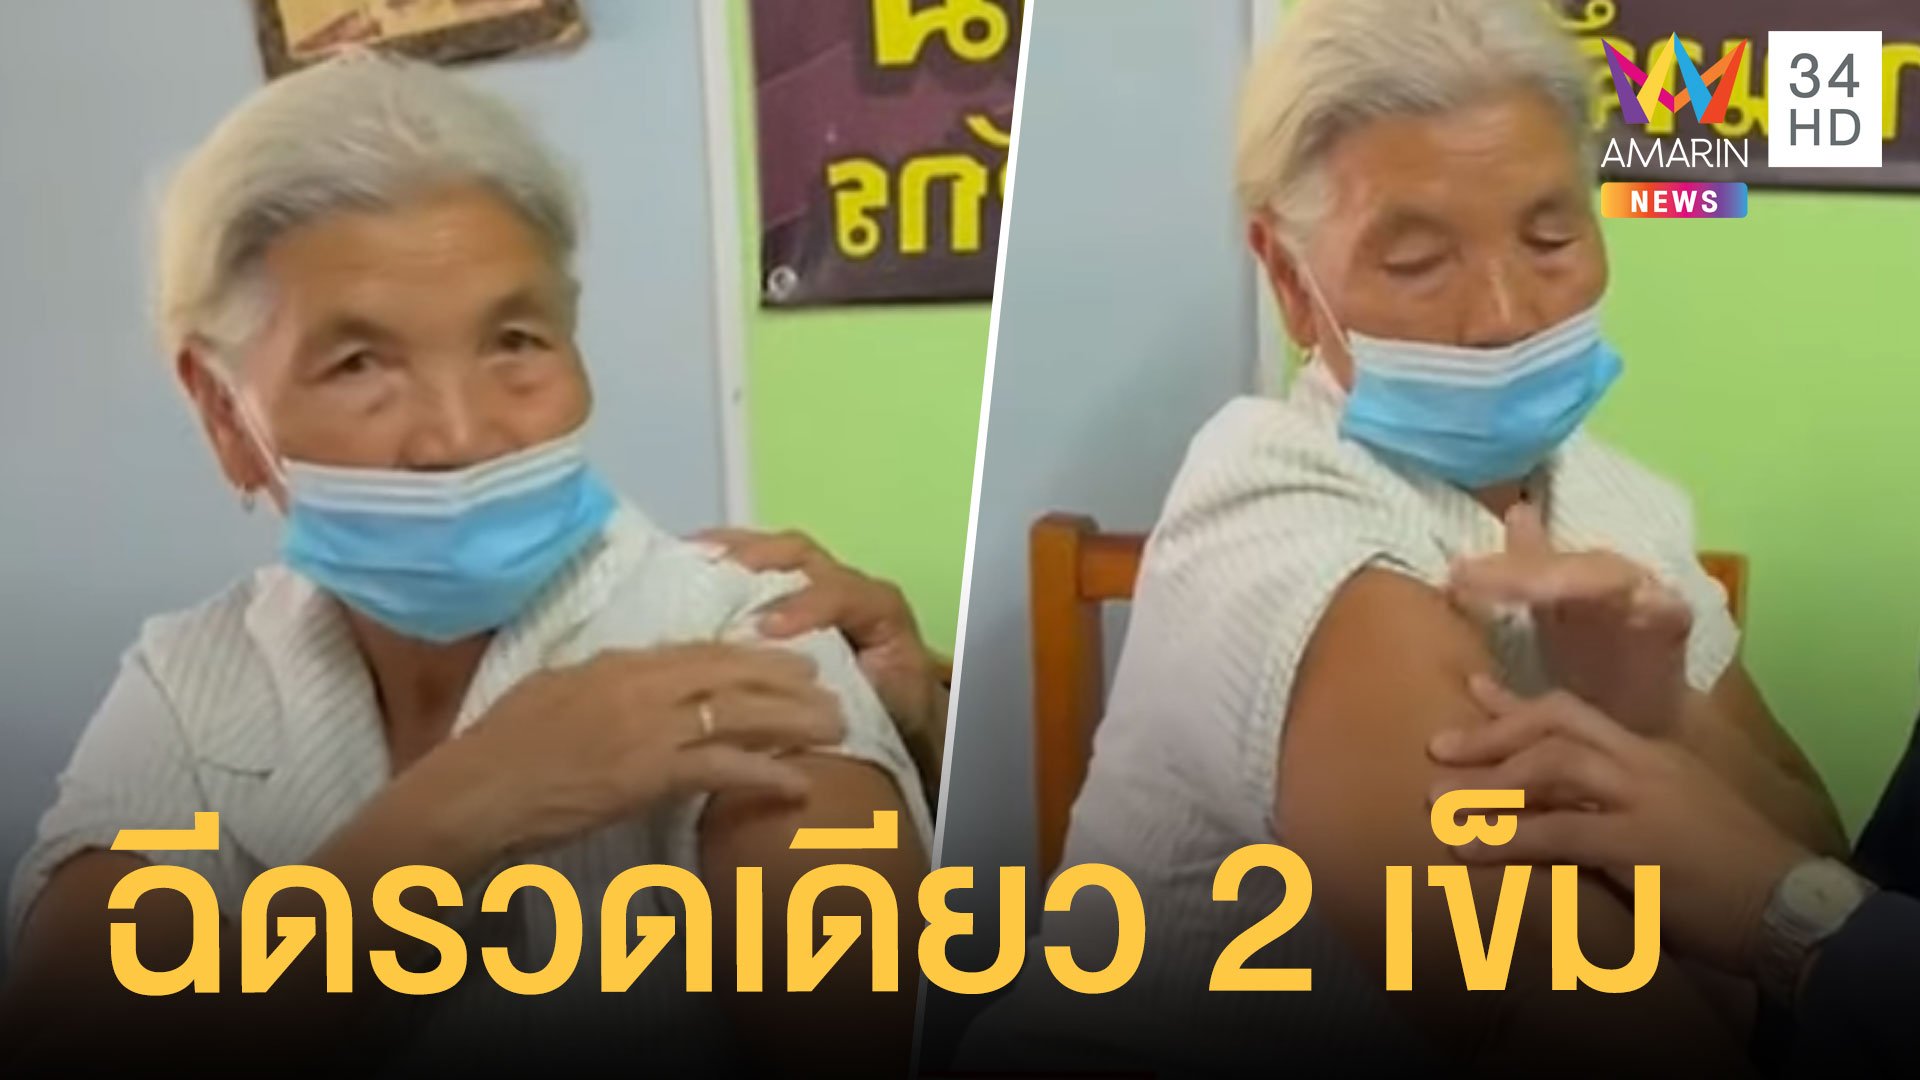 ยายวัย 70 ได้ฉีดวัคซีนแอสตร้าเซเนก้า 2 เข็มรวดแขนซ้ายขวา | ข่าวอรุณอมรินทร์ | 18 ส.ค. 64 | AMARIN TVHD34